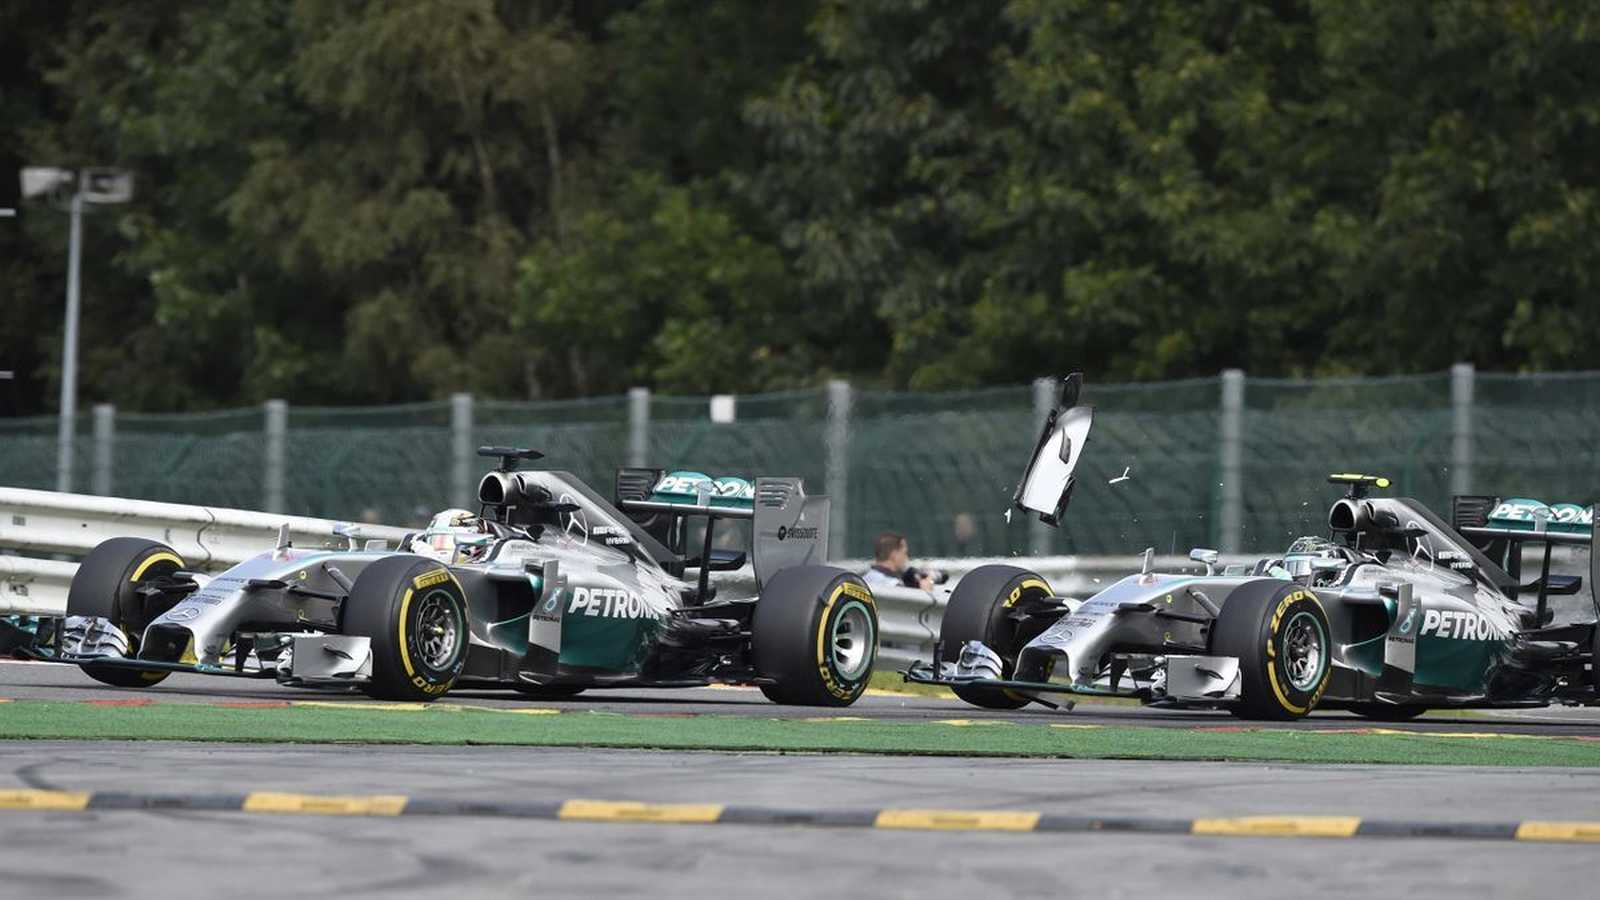 Mas a rivalidade mais marcante foi com Nico Rosberg, na Mercedes. O primeiro choque veio no GP da Bélgica de 2014